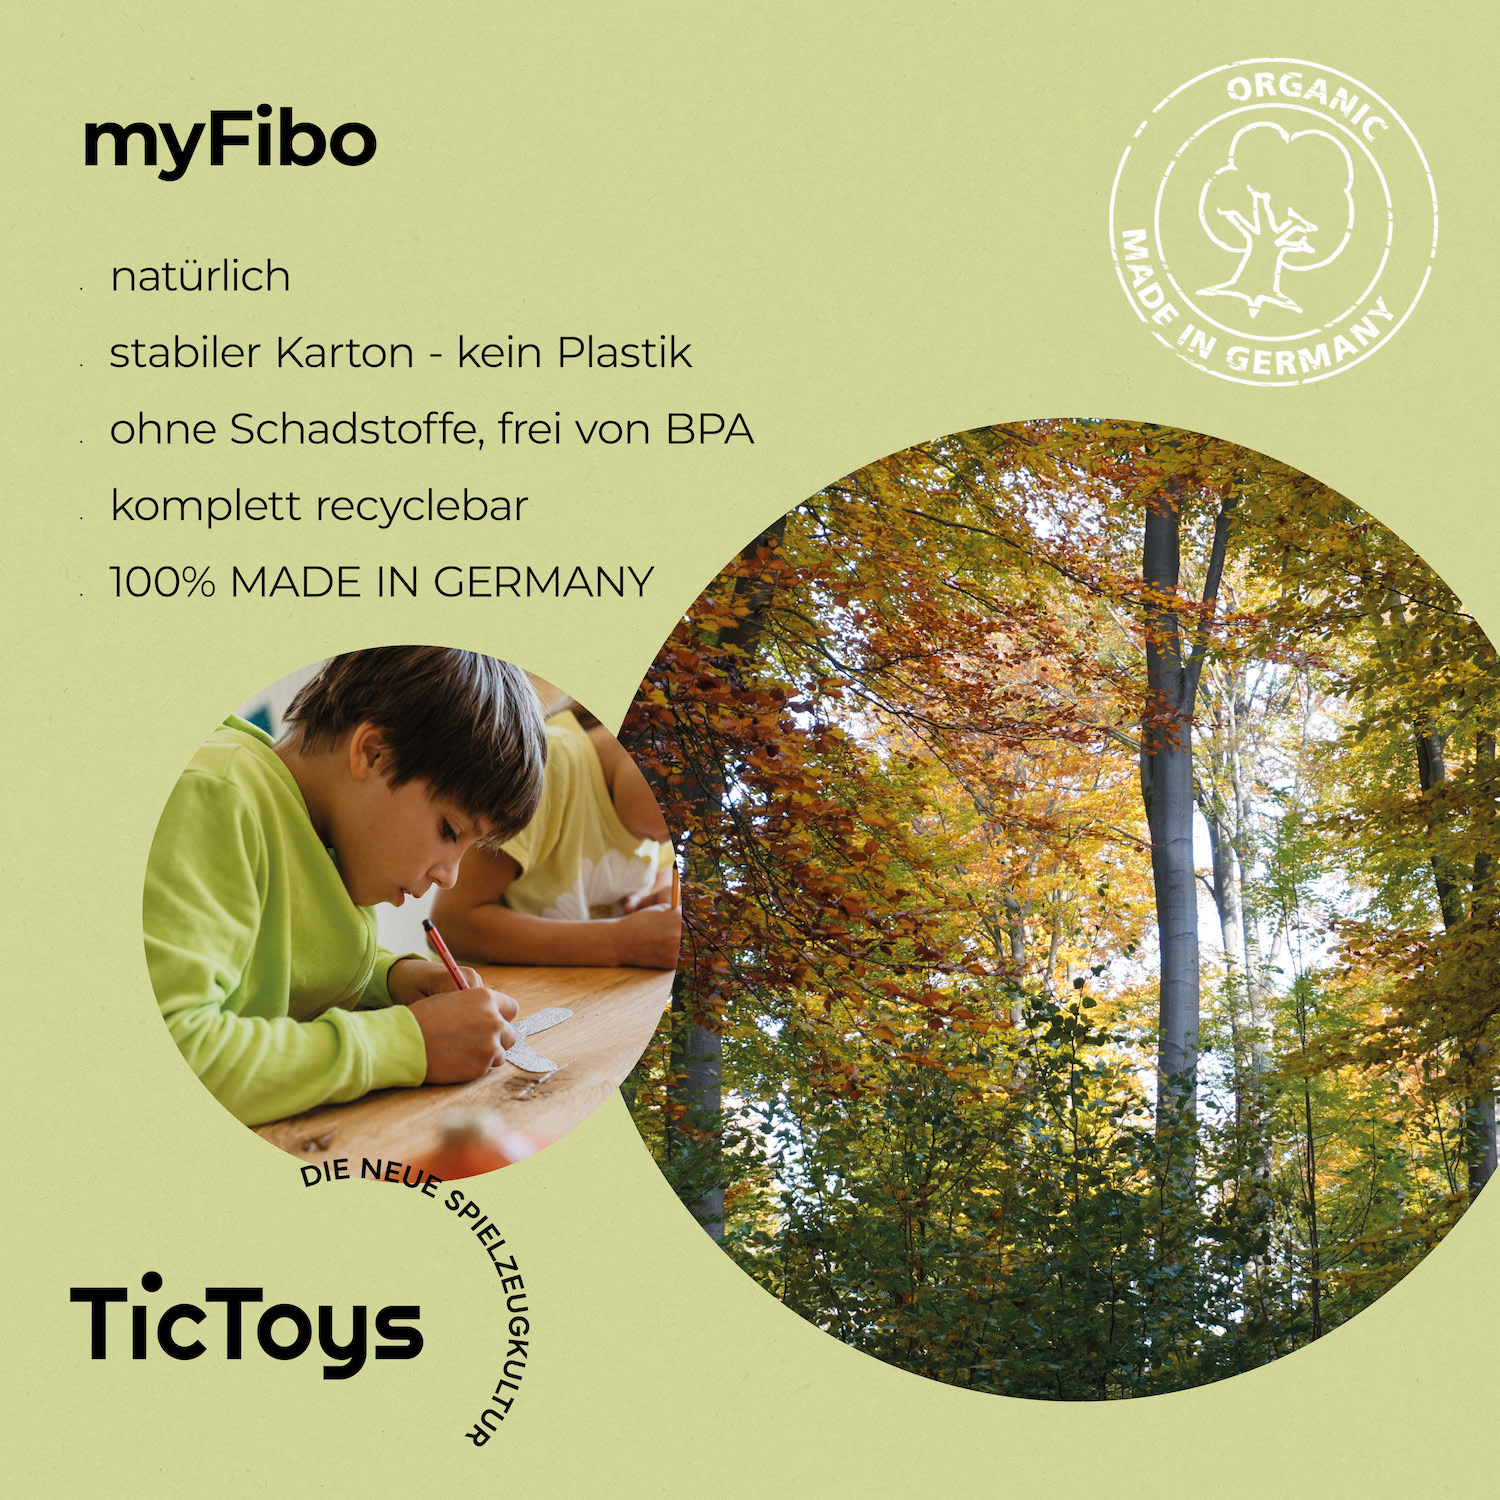 myFibo besteht aus Papier und wird umweltfreundlich in Leipzig produziert